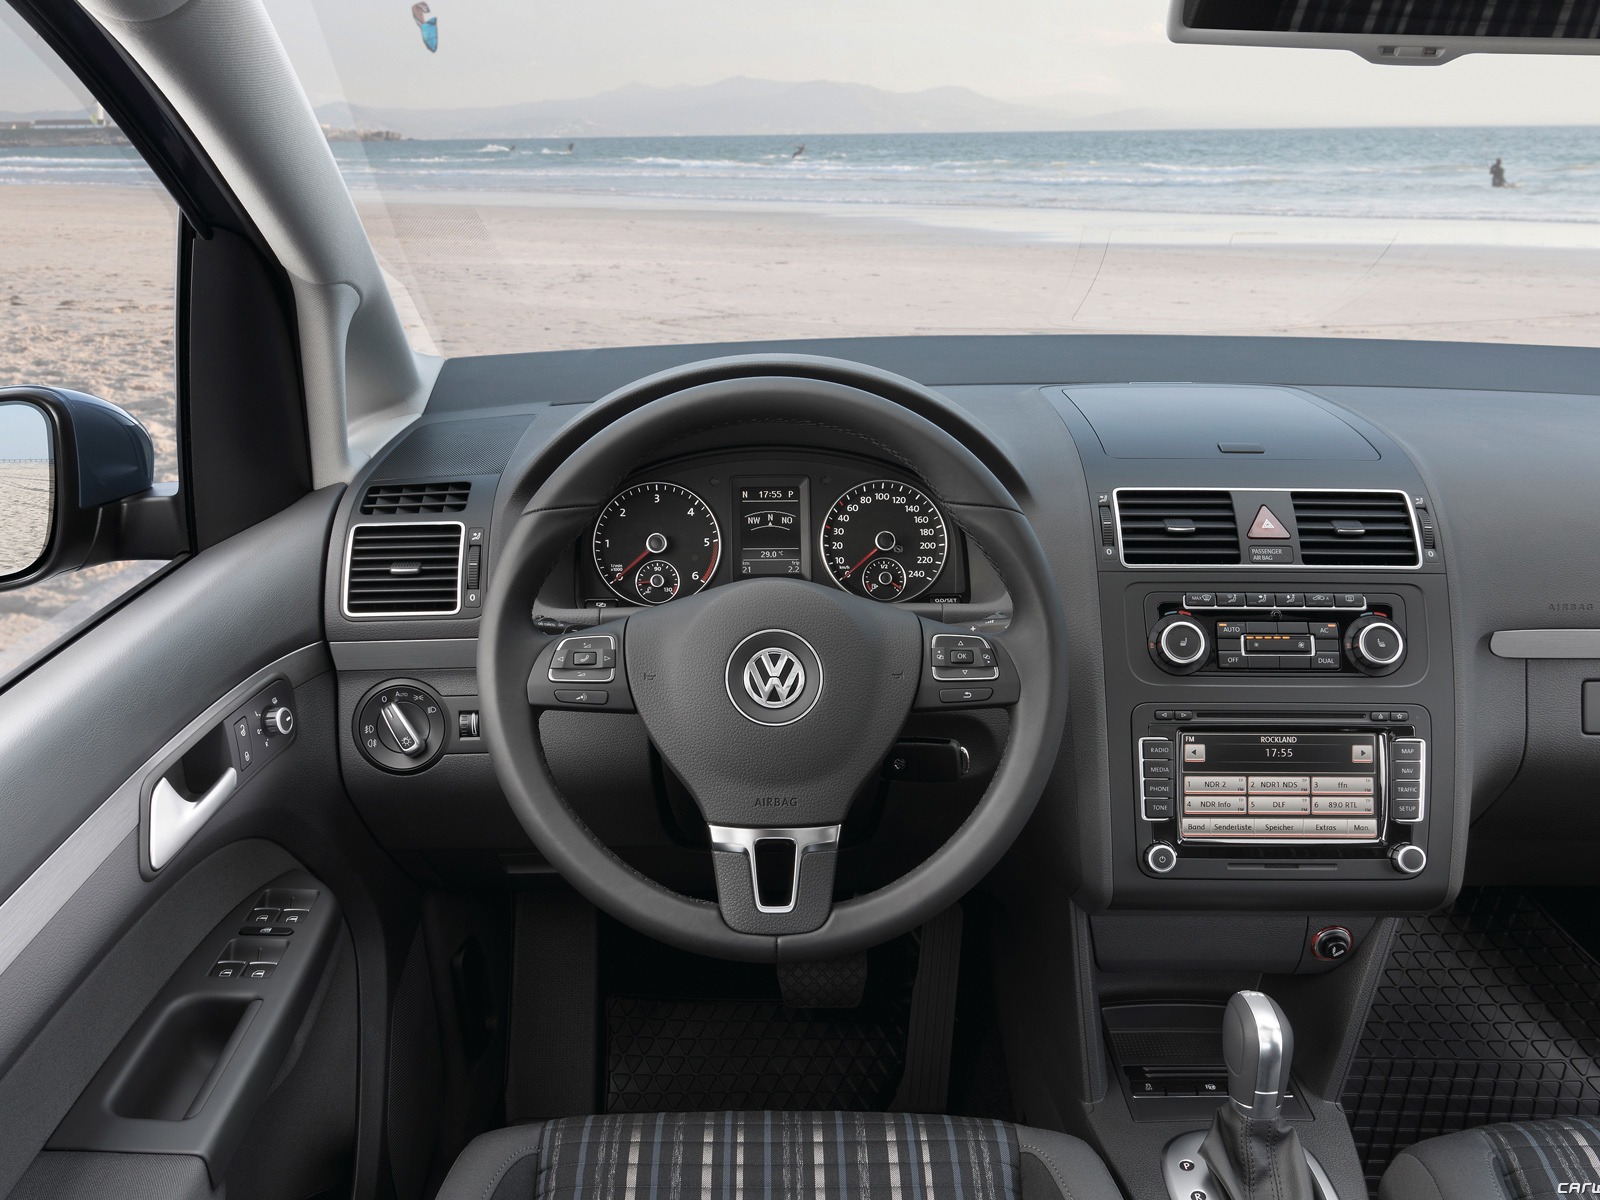 Volkswagen CrossTouran - 2010 大众14 - 1600x1200